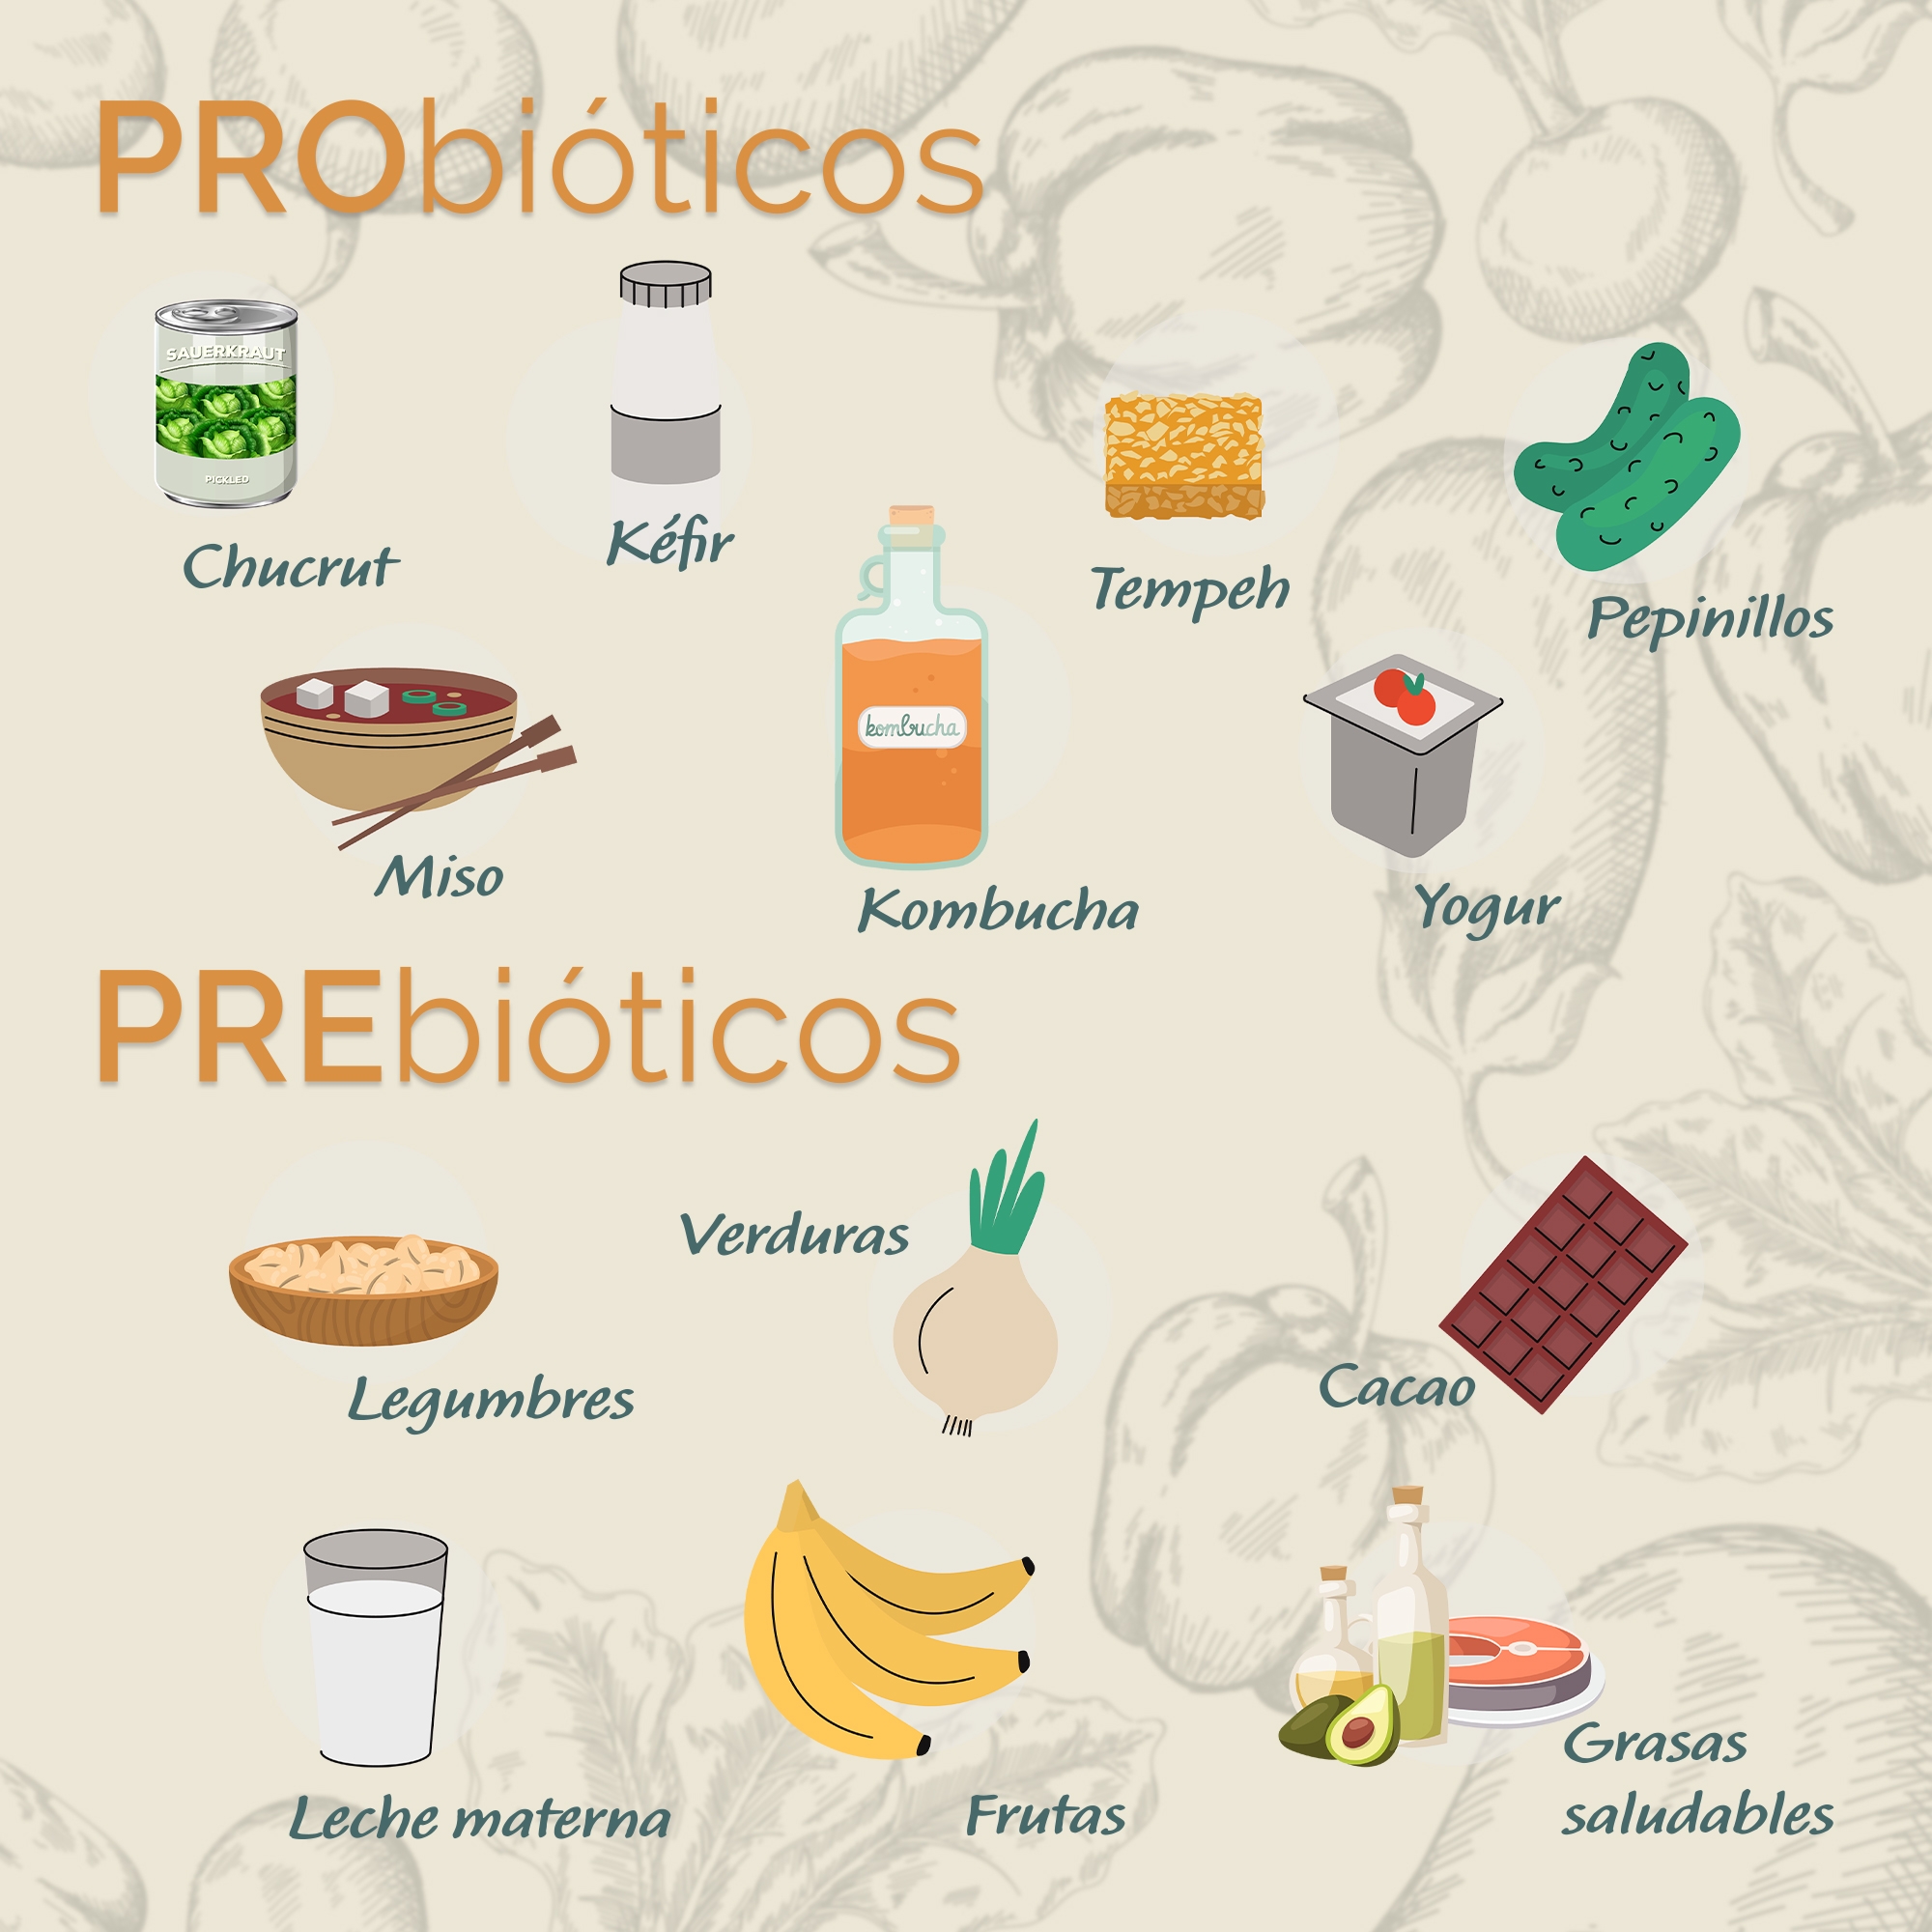 En este momento estás viendo Prebióticos y probióticos. ¿Qué son?